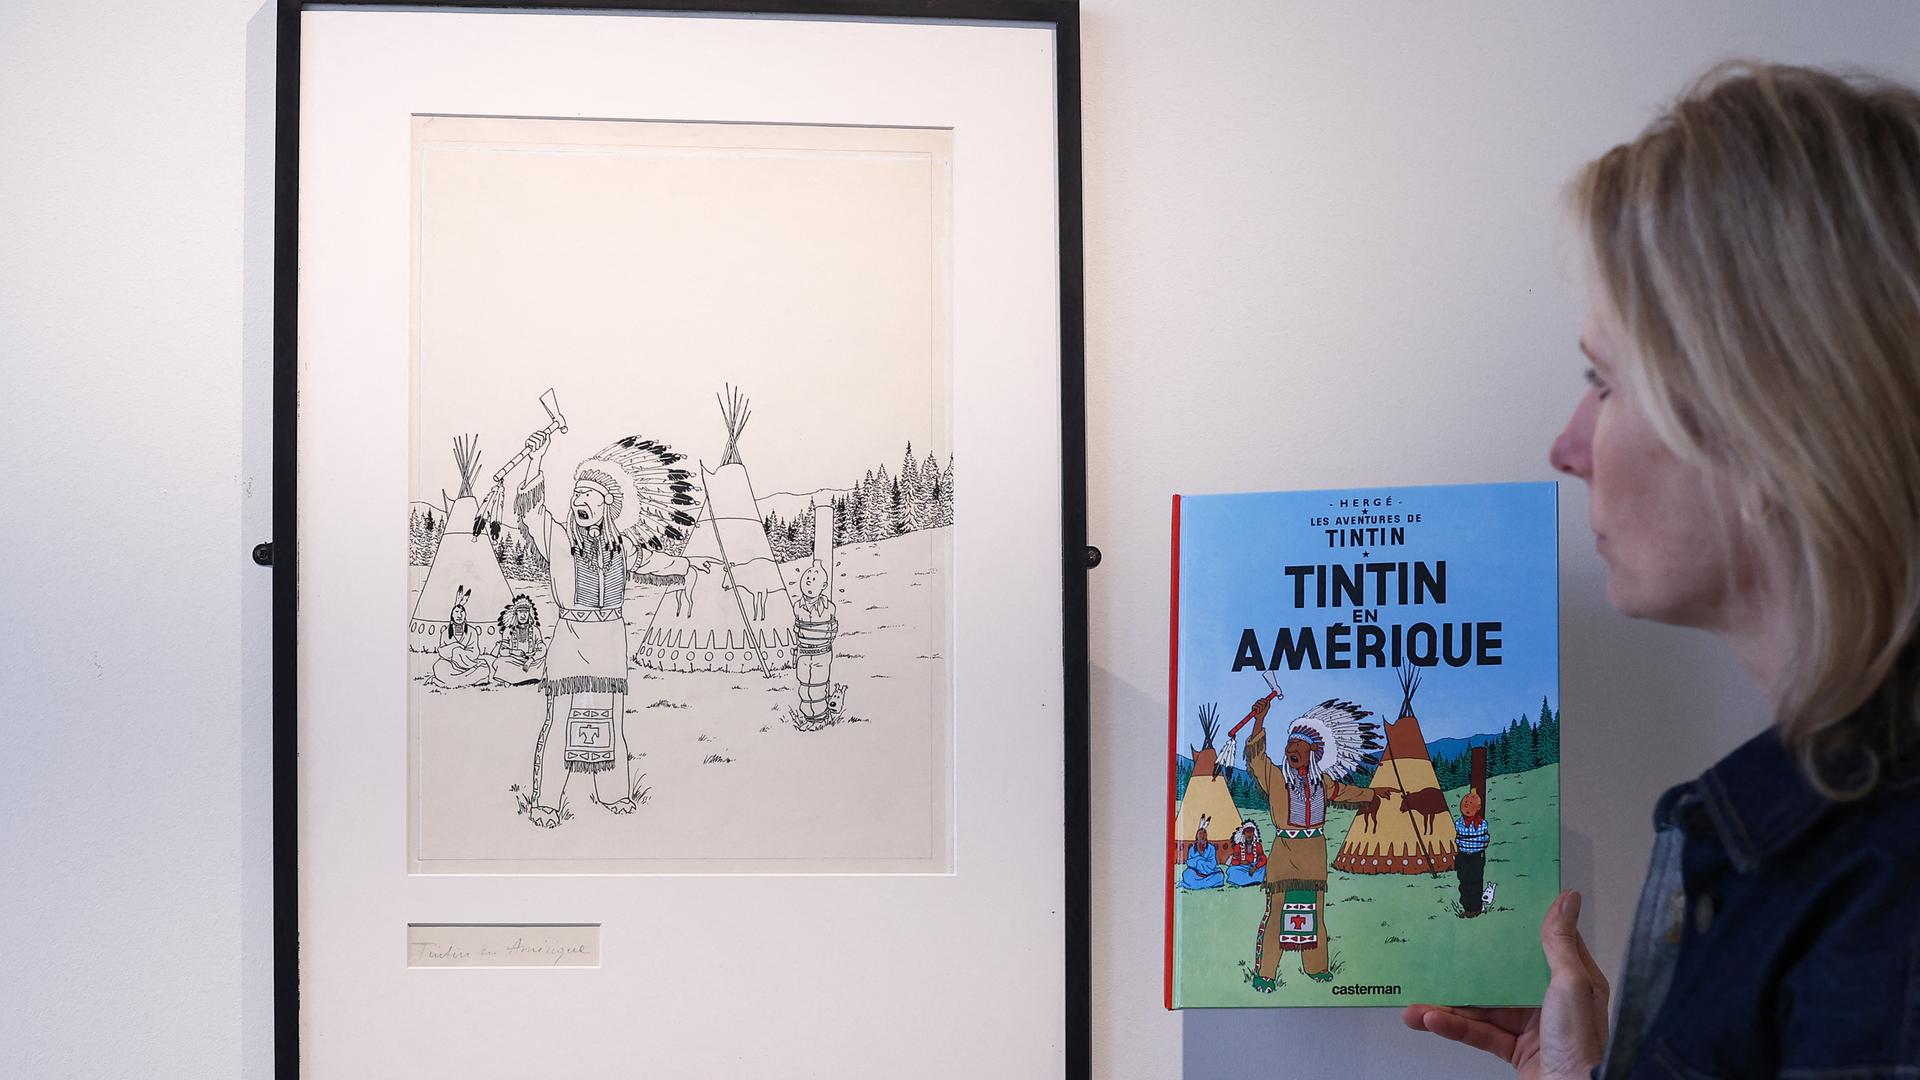 Das Titelblatt für den Comic "Tim und Struppi in Amerika" von Hergé.